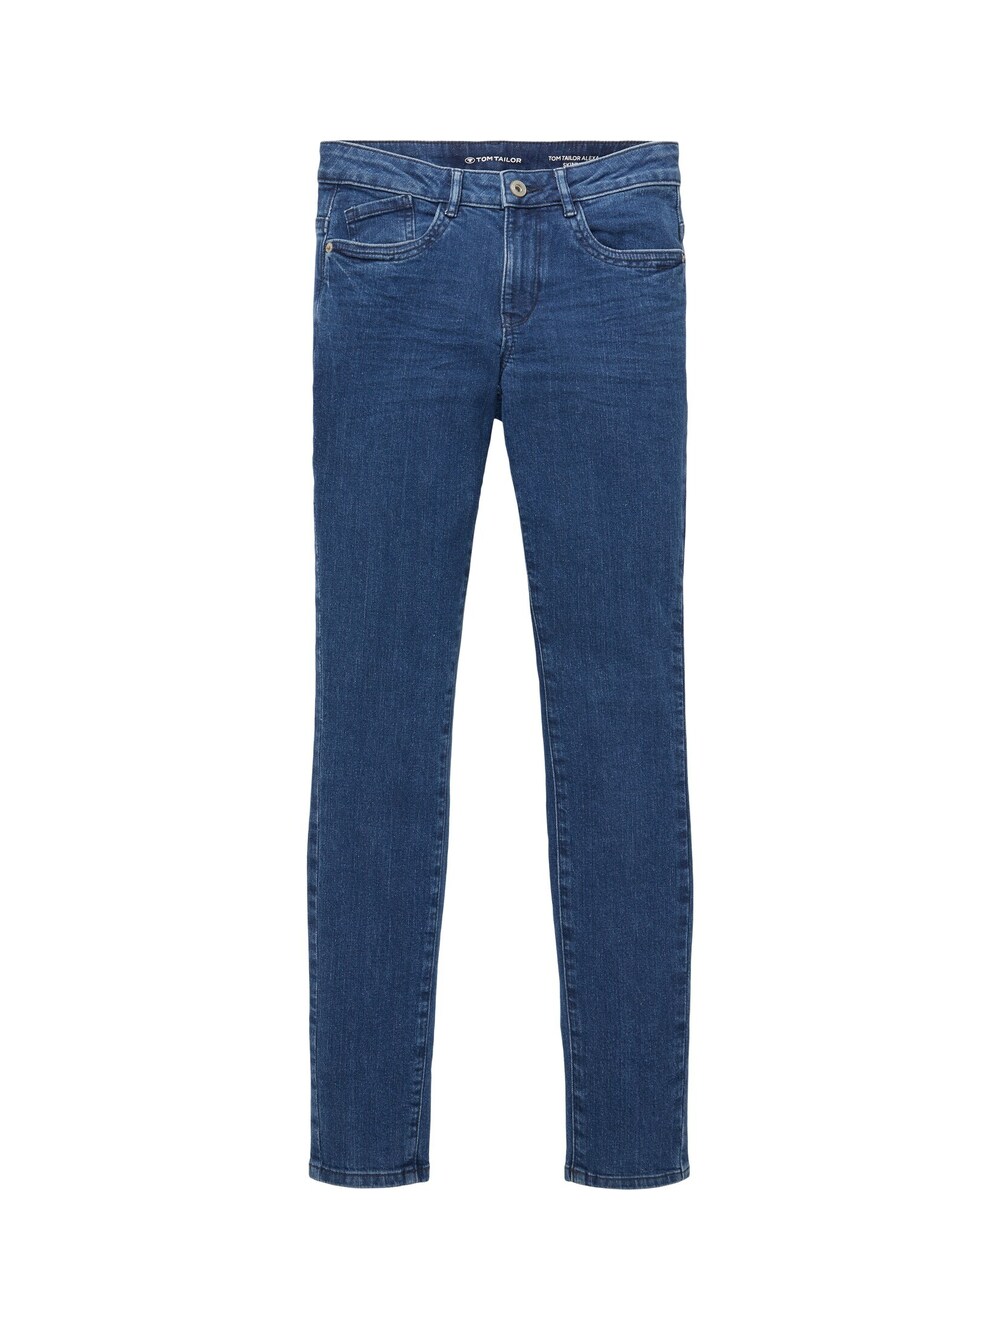 Узкие джинсы Tom Tailor Alexa, синий джинсы скинни tom tailor alexa прилегающие средняя посадка стрейч размер 25 синий